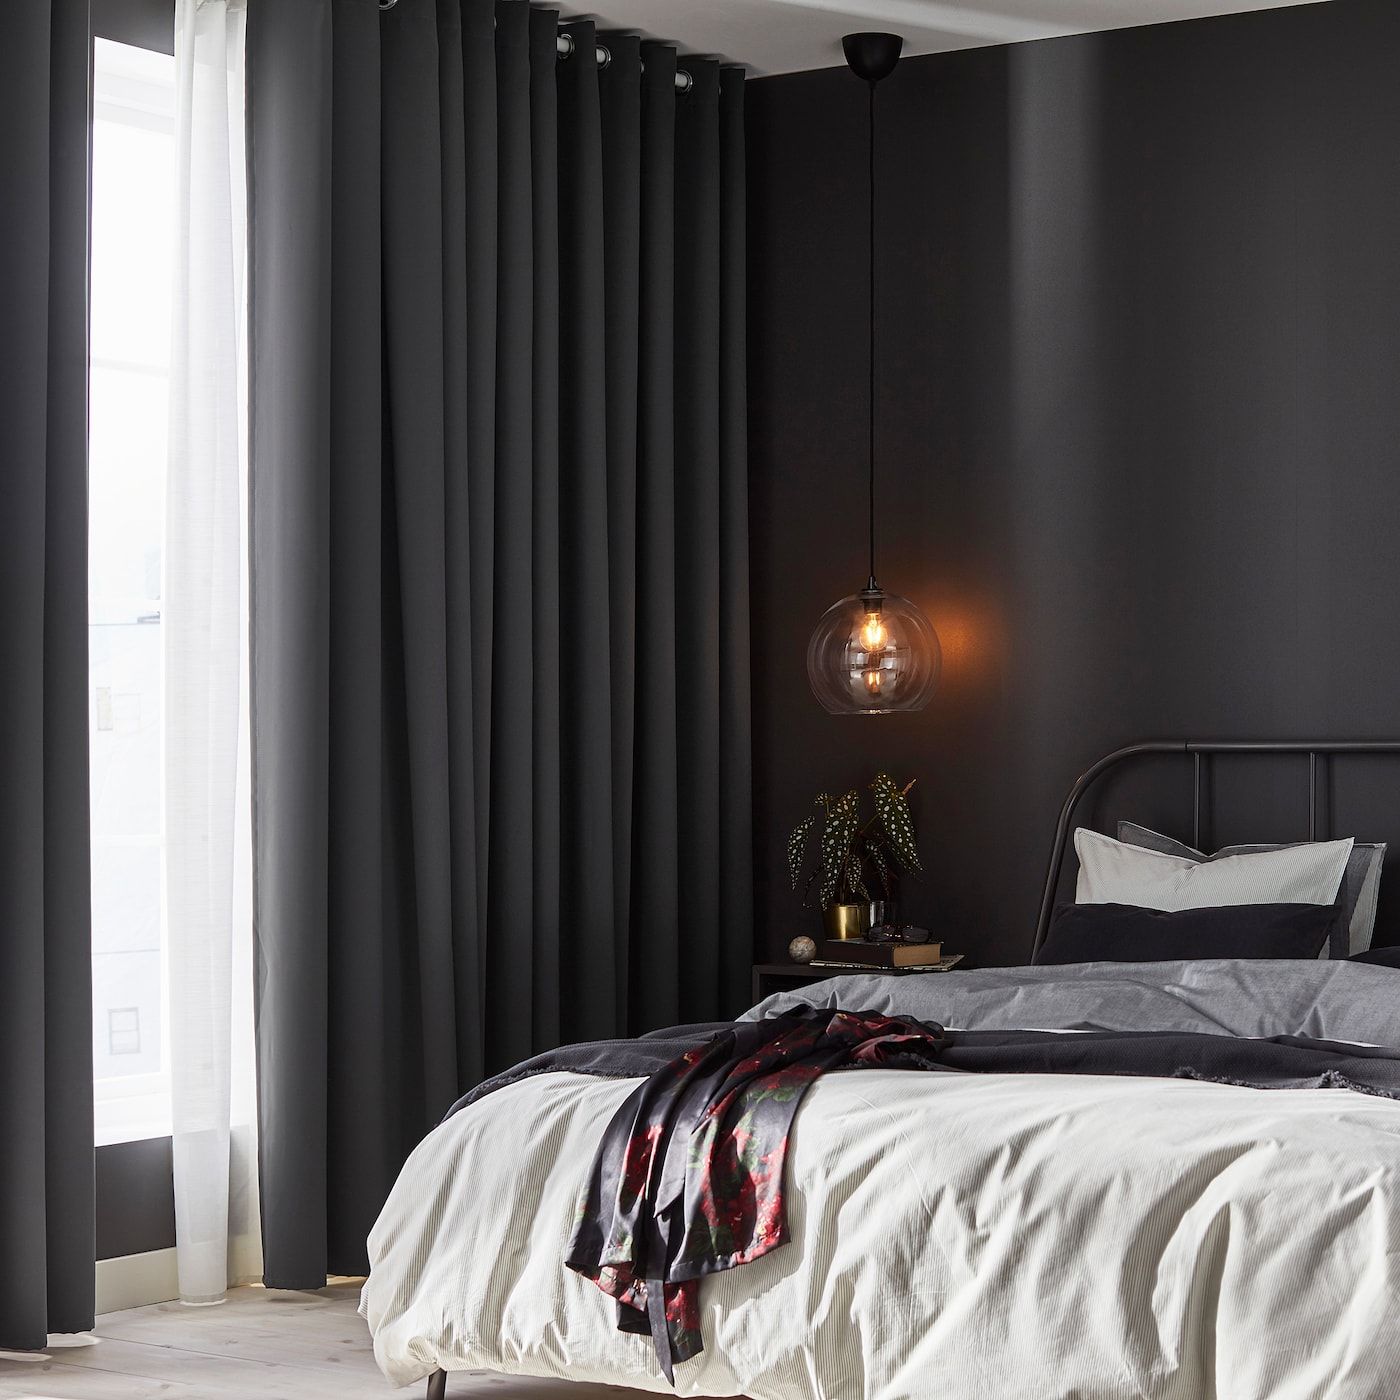 Cortinas y accesorios ignífugos del estilo europeo, cortinas modernas para las habitaciones de los hoteles 11